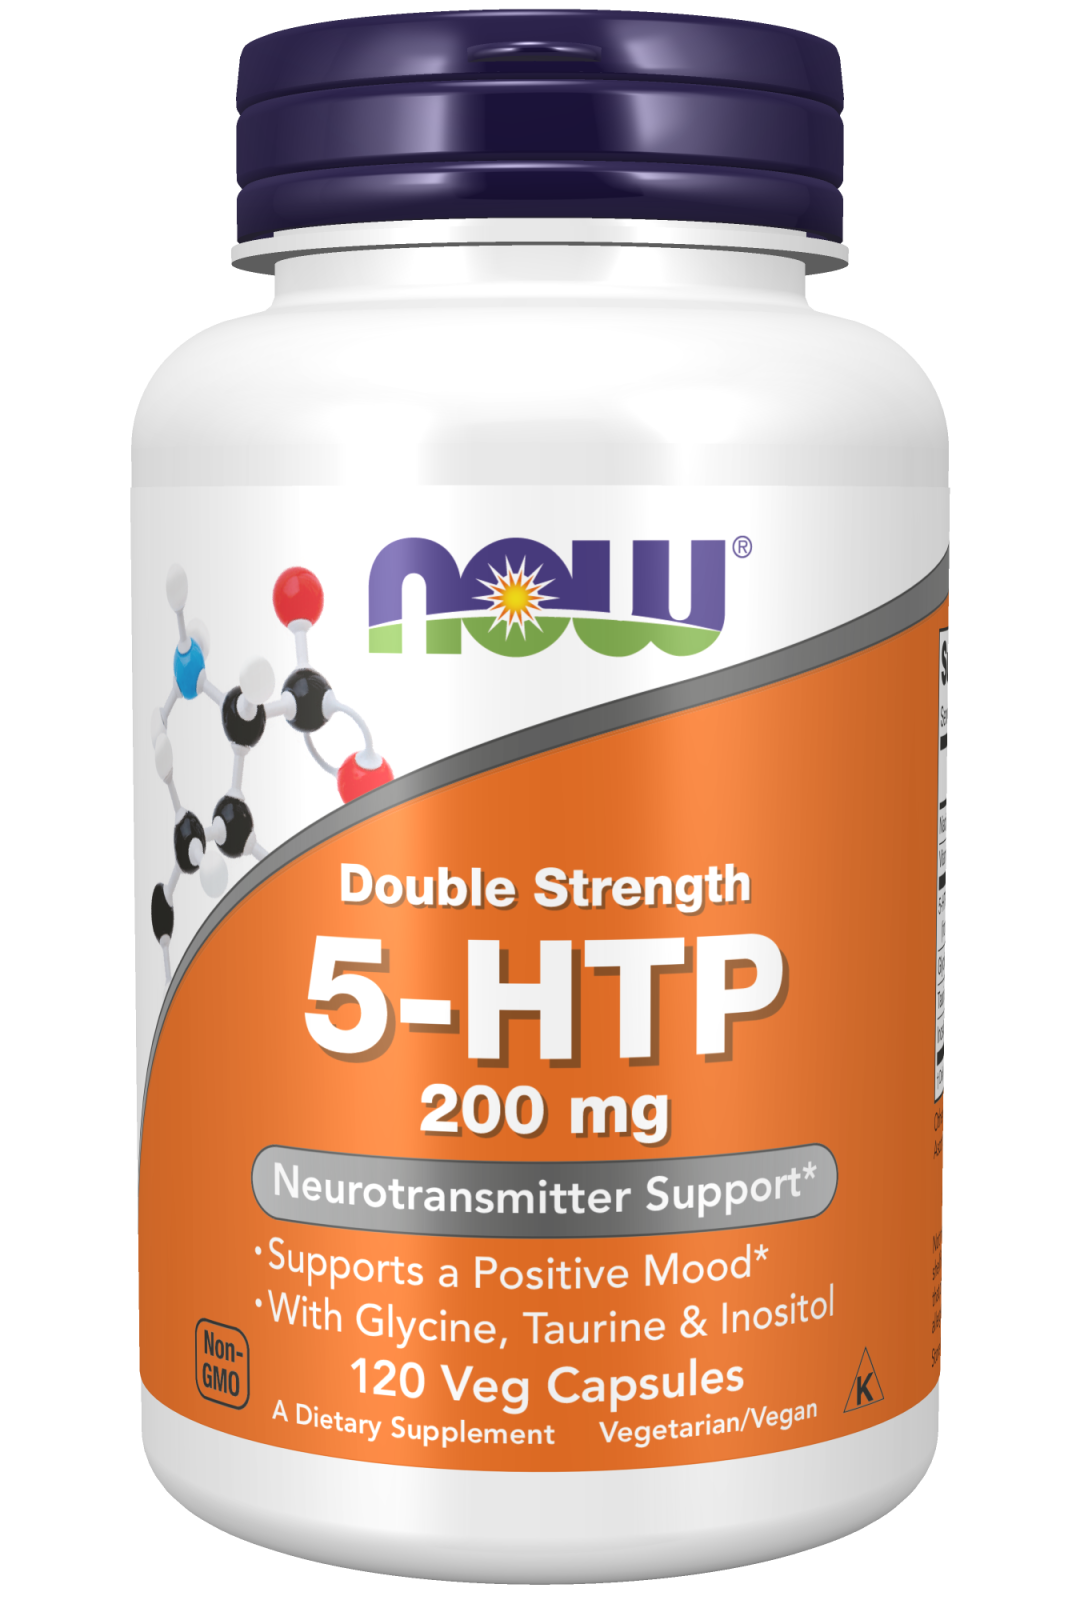 5-HTP, Double Strength 200 mg - 120 Veg Capsules Bottle